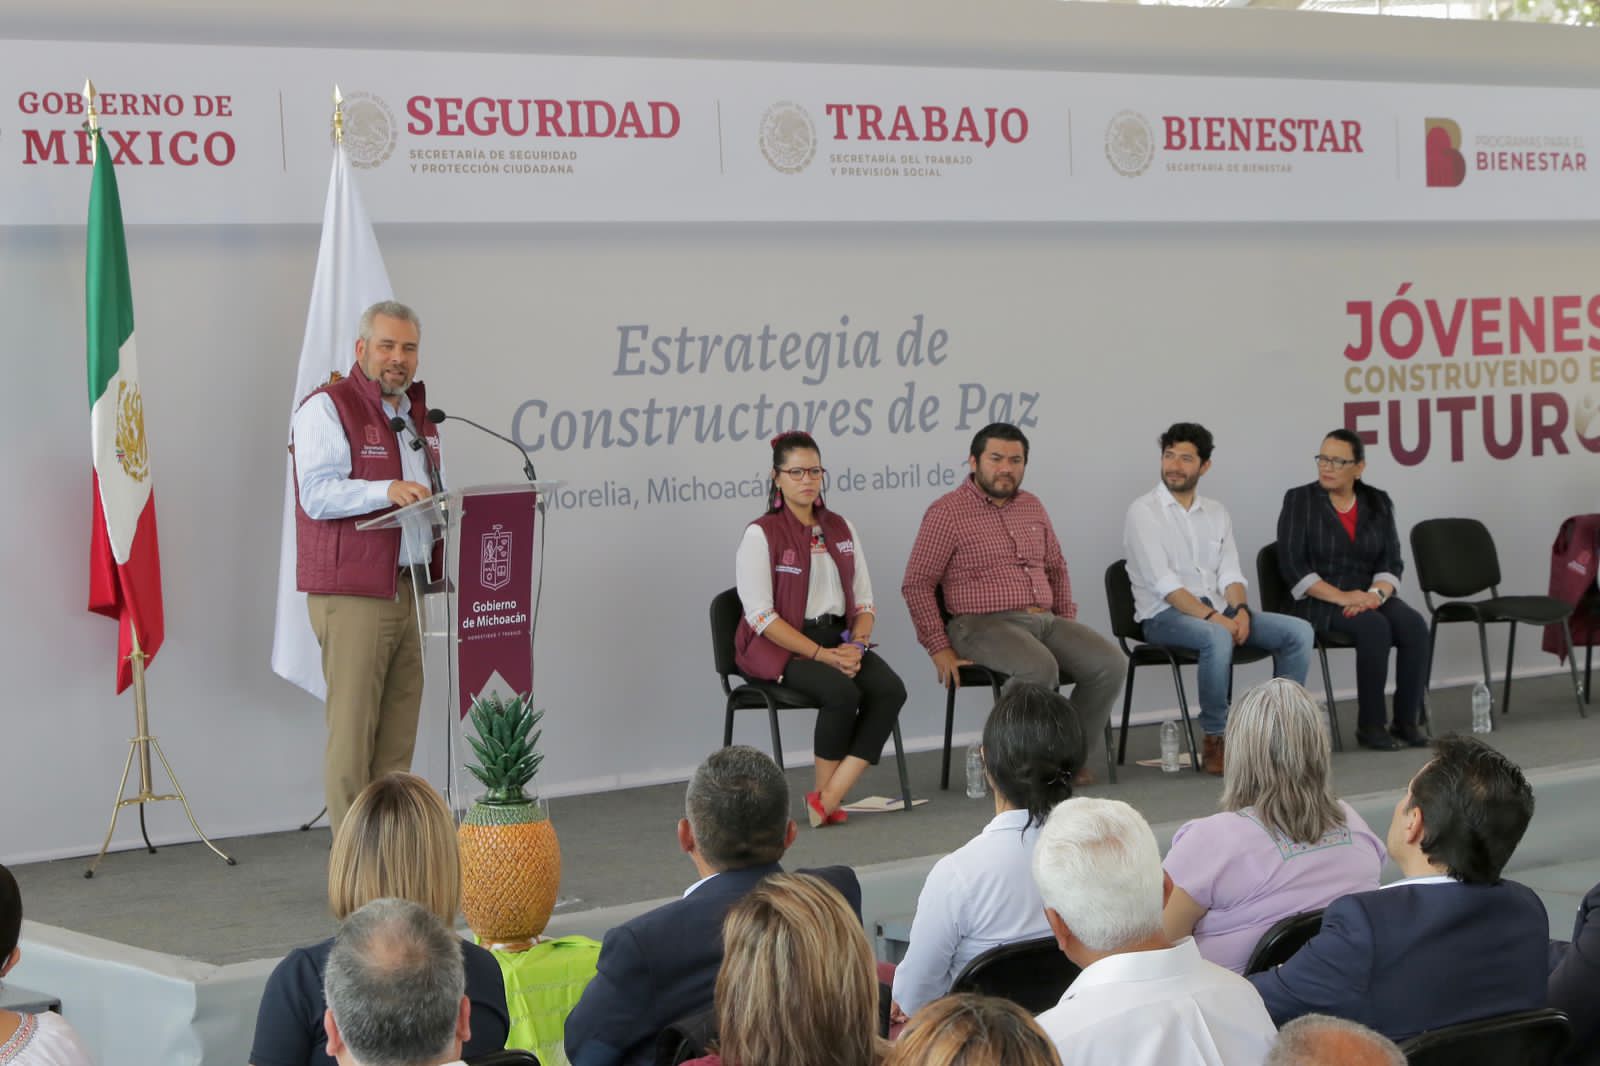 *Bedolla y federación arrancan estrategia nacional “Constructores de Paz” en Michoacán*